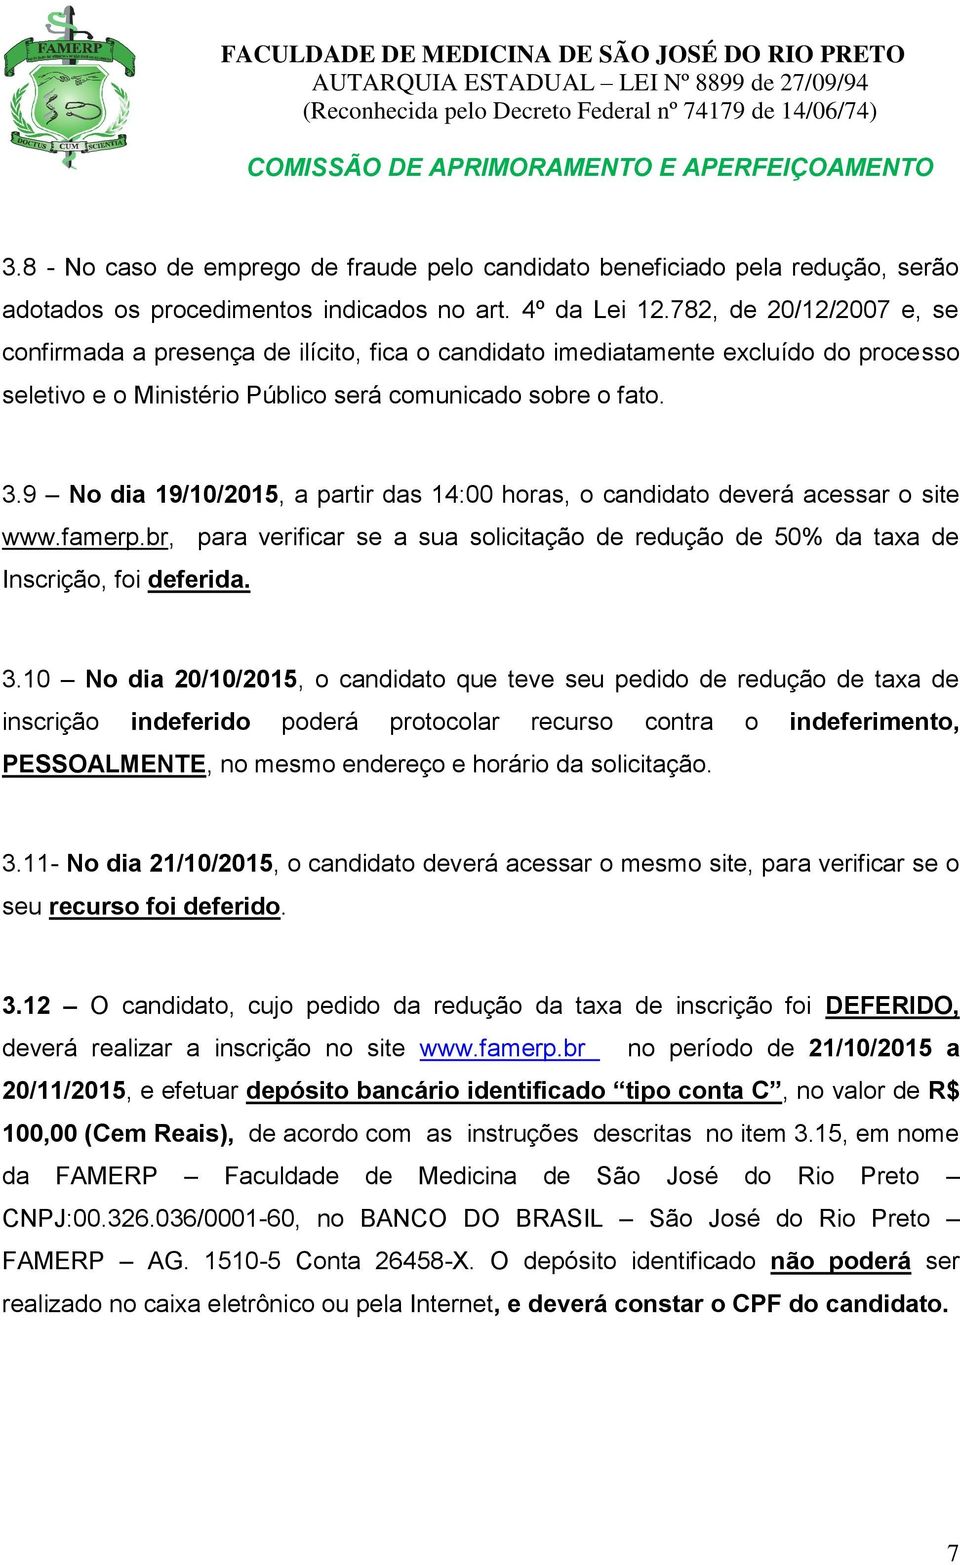 9 No dia 19/10/2015, a partir das 14:00 horas, o candidato deverá acessar o site www.famerp.br, para verificar se a sua solicitação de redução de 50% da taxa de Inscrição, foi deferida. 3.